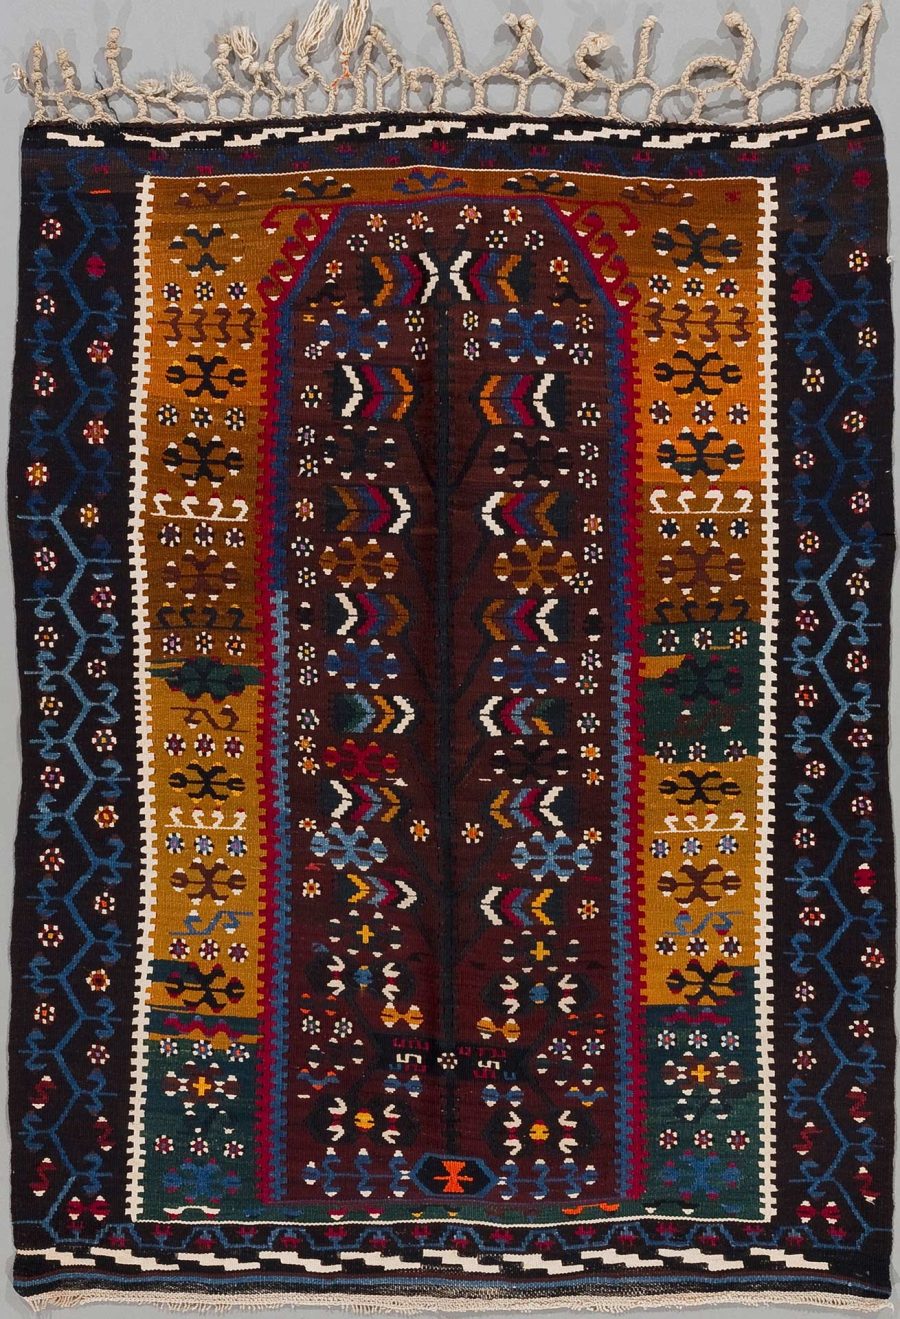 Handgewebter Teppich mit komplexen geometrischen Mustern und pflanzlichen Motiven in vielfältigen Farben auf dunklem Hintergrund, umrahmt von mehreren dekorativen Bordüren und versehen mit Fransen an den Enden.